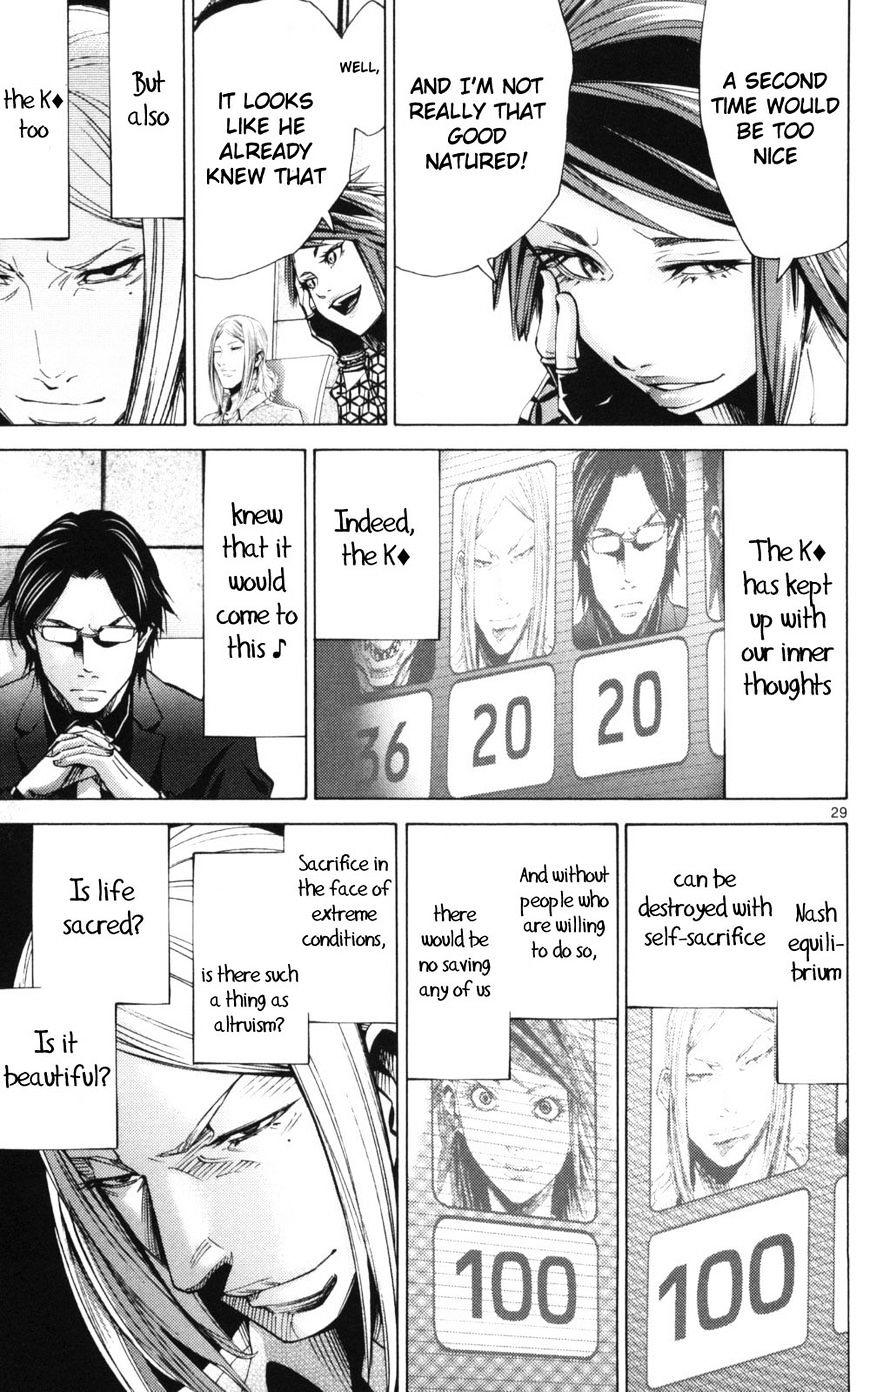 Imawa No Kuni No Alice Chapter 51.2 : Side Story 6 - King Of Diamonds (2) page 29 - Mangakakalot